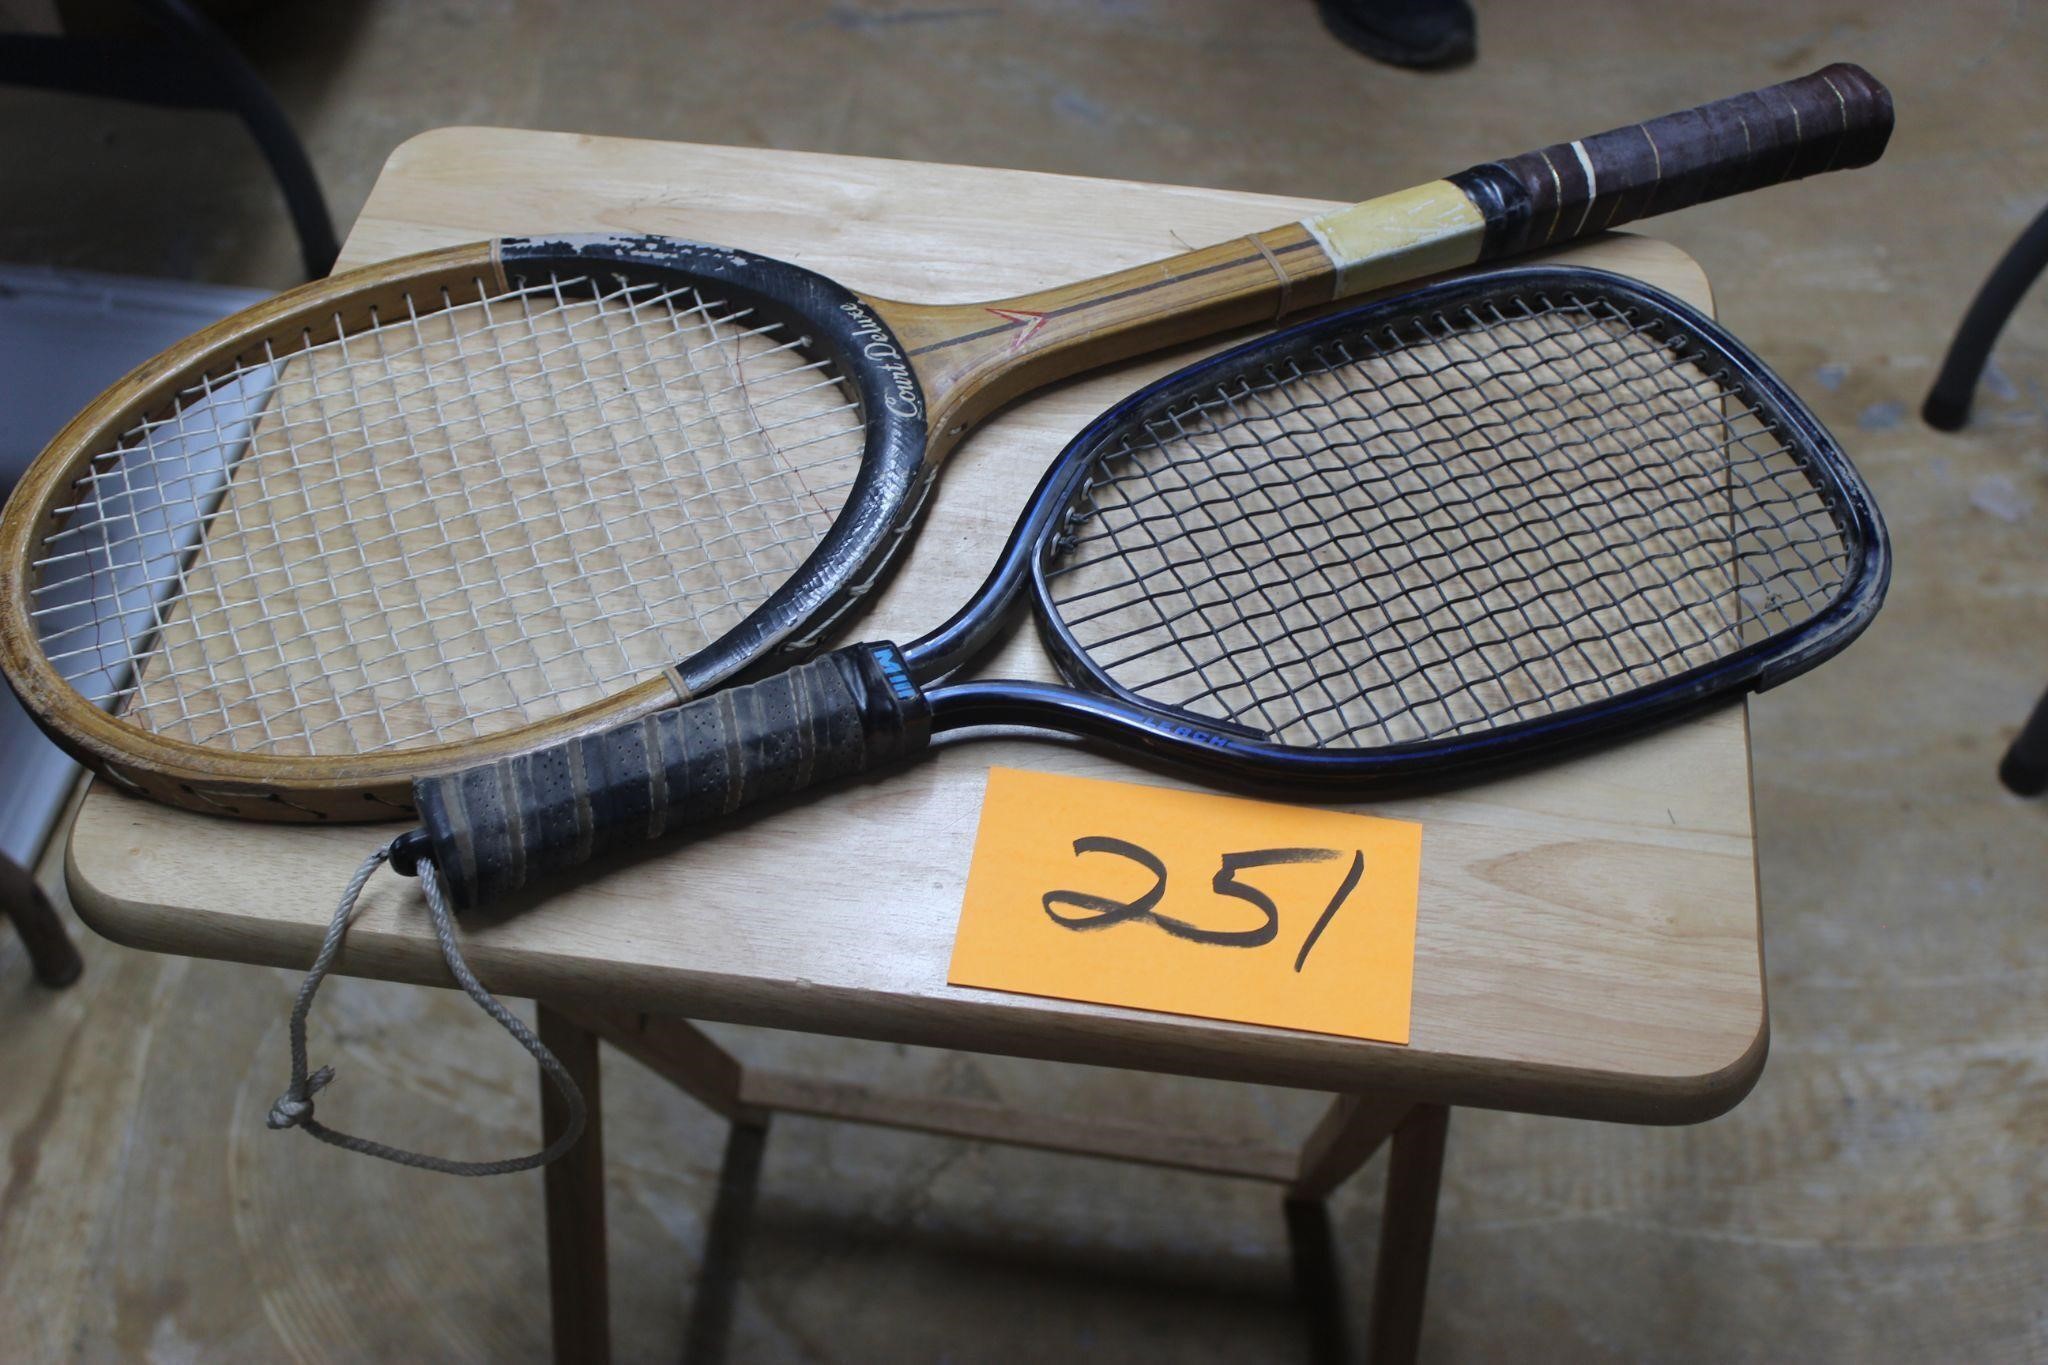 Tennis & Pickleball rackets